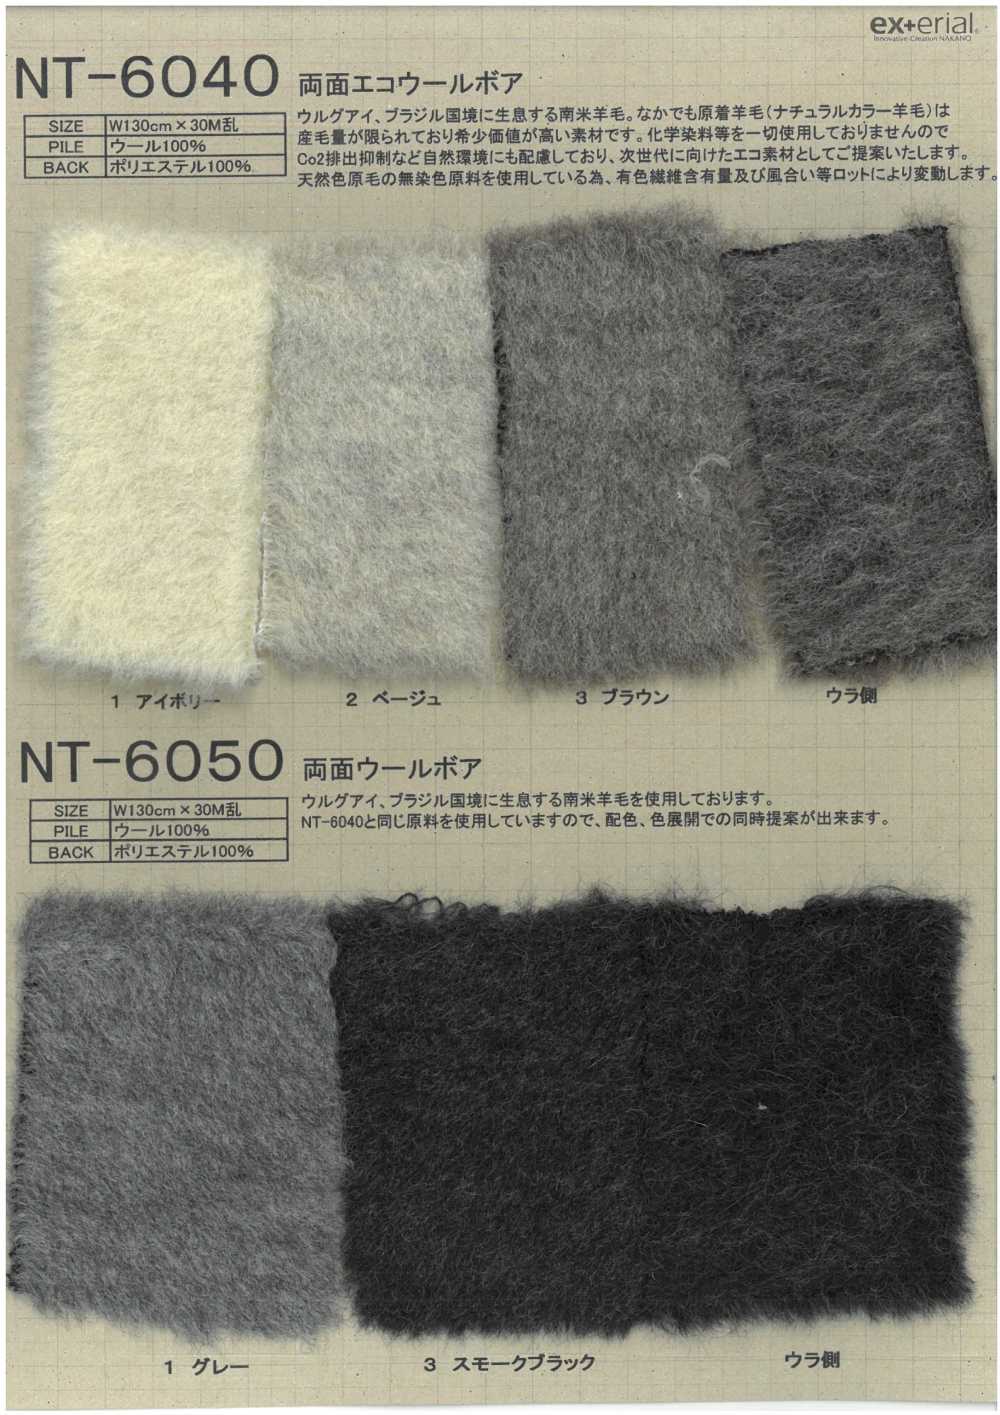 NT-6040 Craft Fur [doppelseitige Öko-Wollboa][Textilgewebe] Nakano-Strümpfe-Industrie